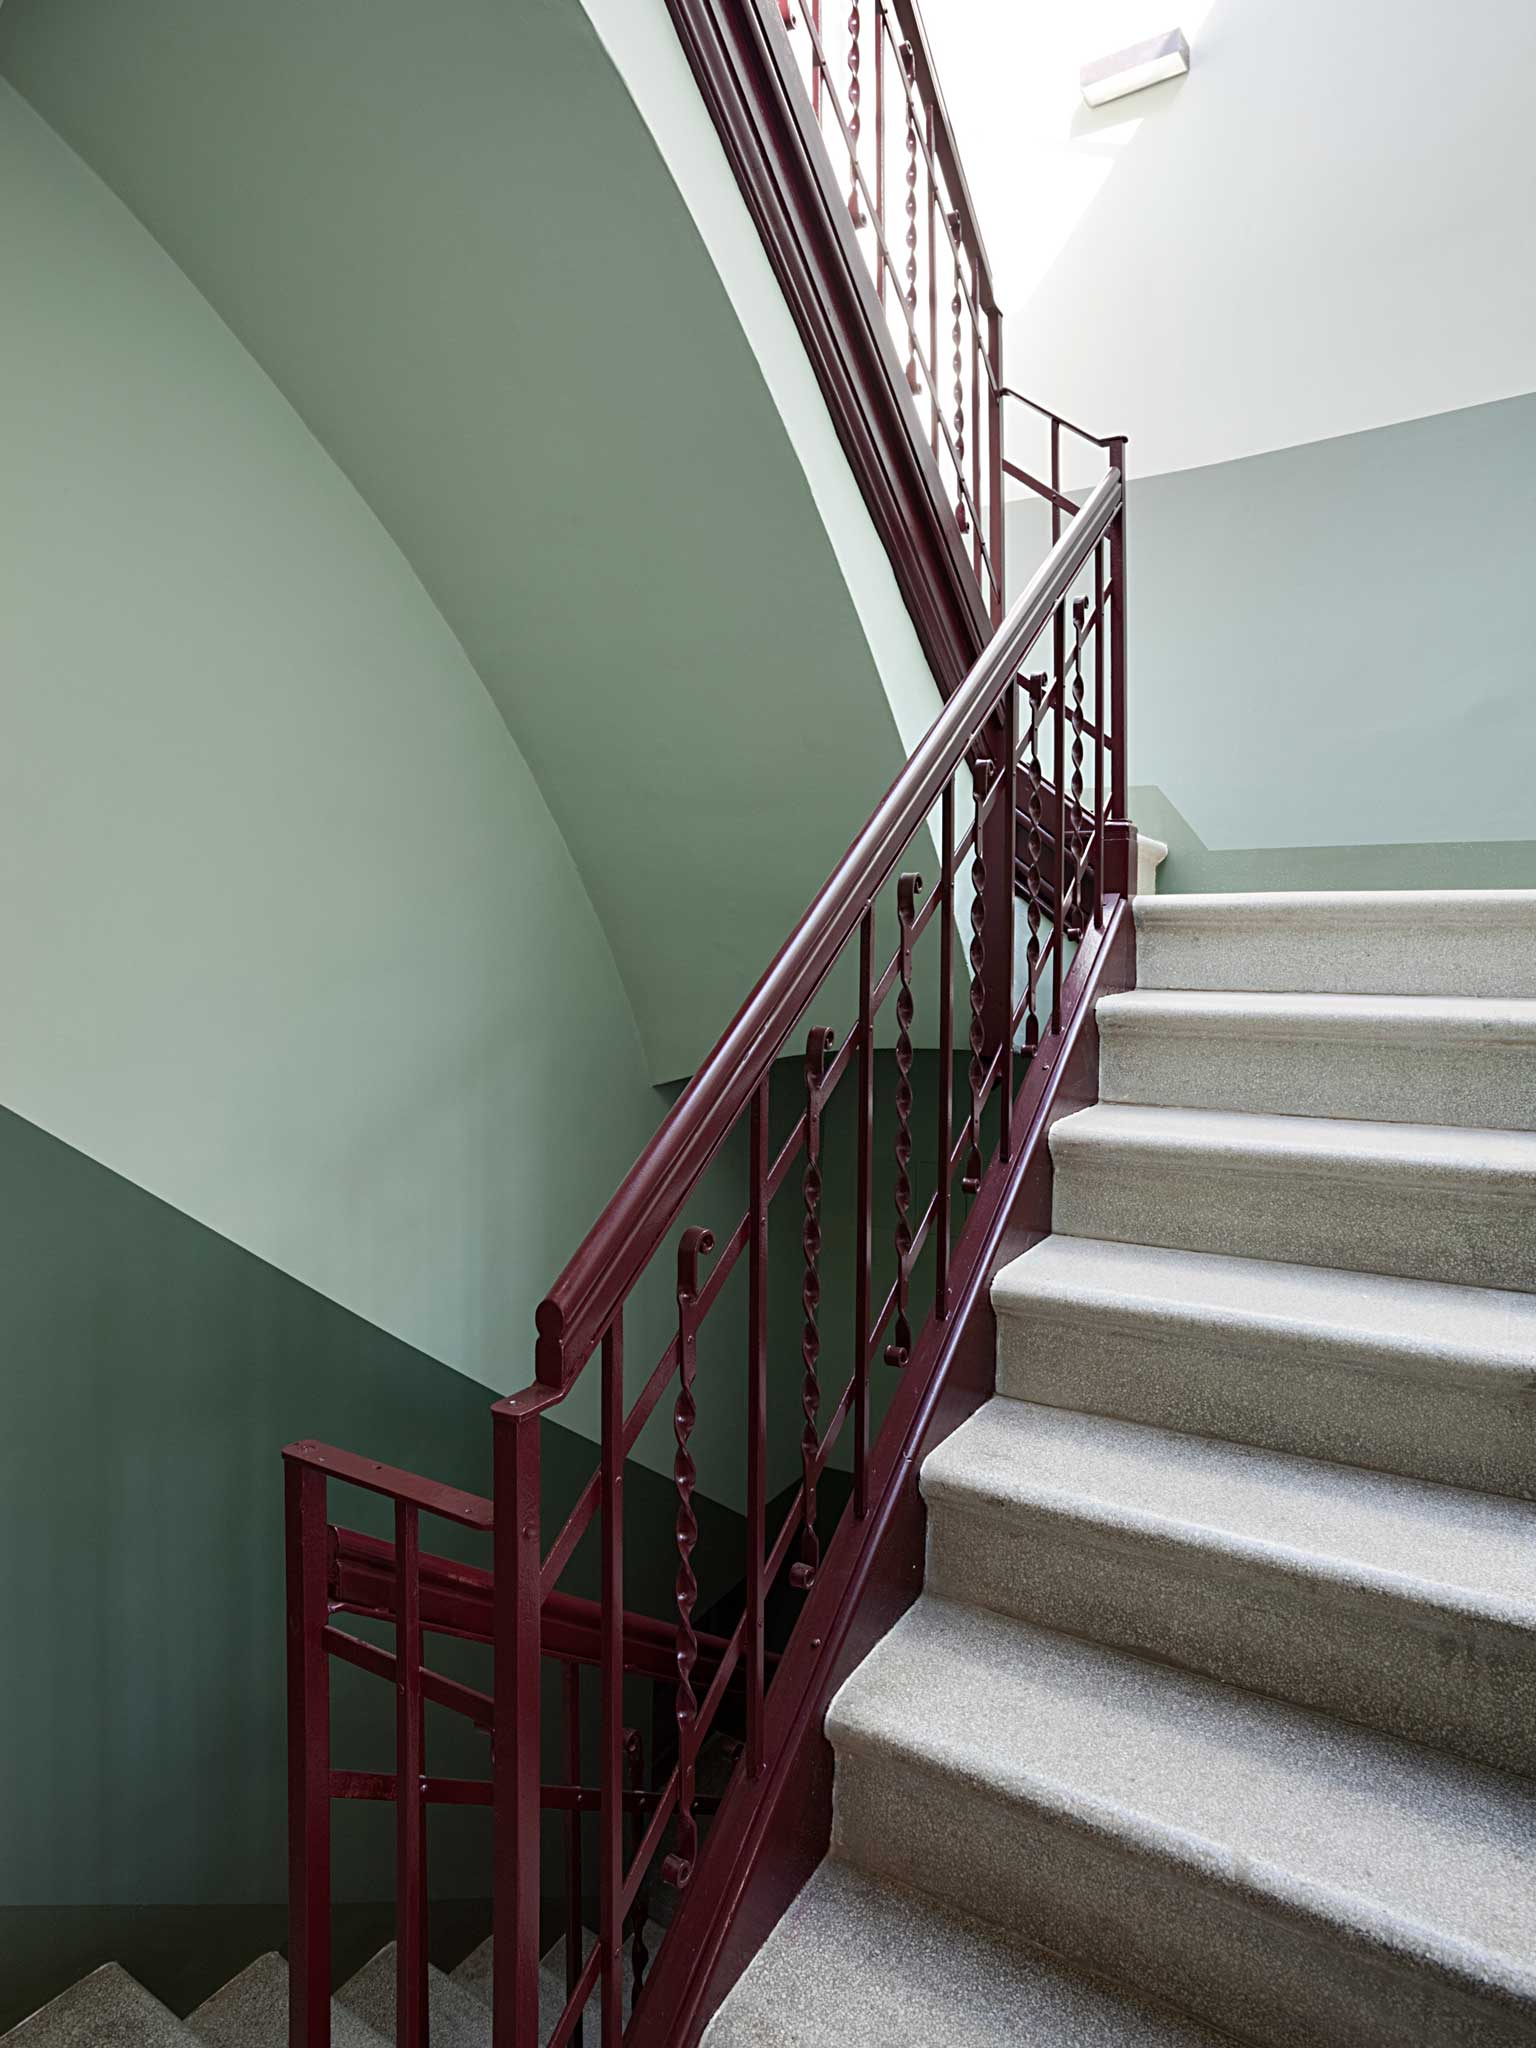 Rehabilitació Edifici Sant Llorenç Savall - escales | Dues ARQuitectes